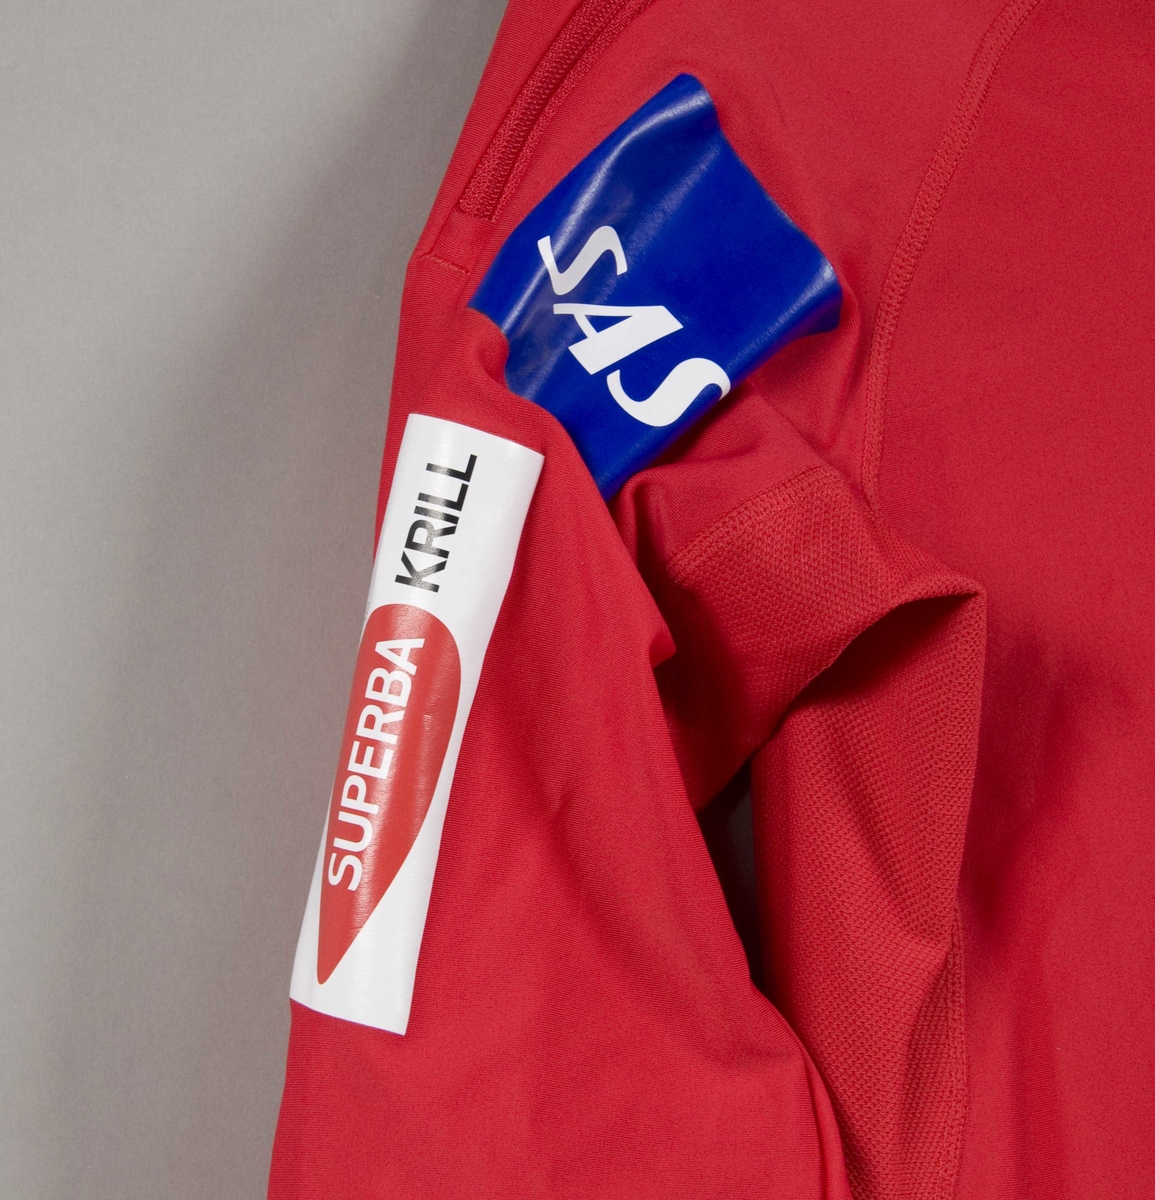 Rød langrennsdress med hvite og blåe striper. På dressen er det flere laminerte logoer for forskjellige sponsorer.